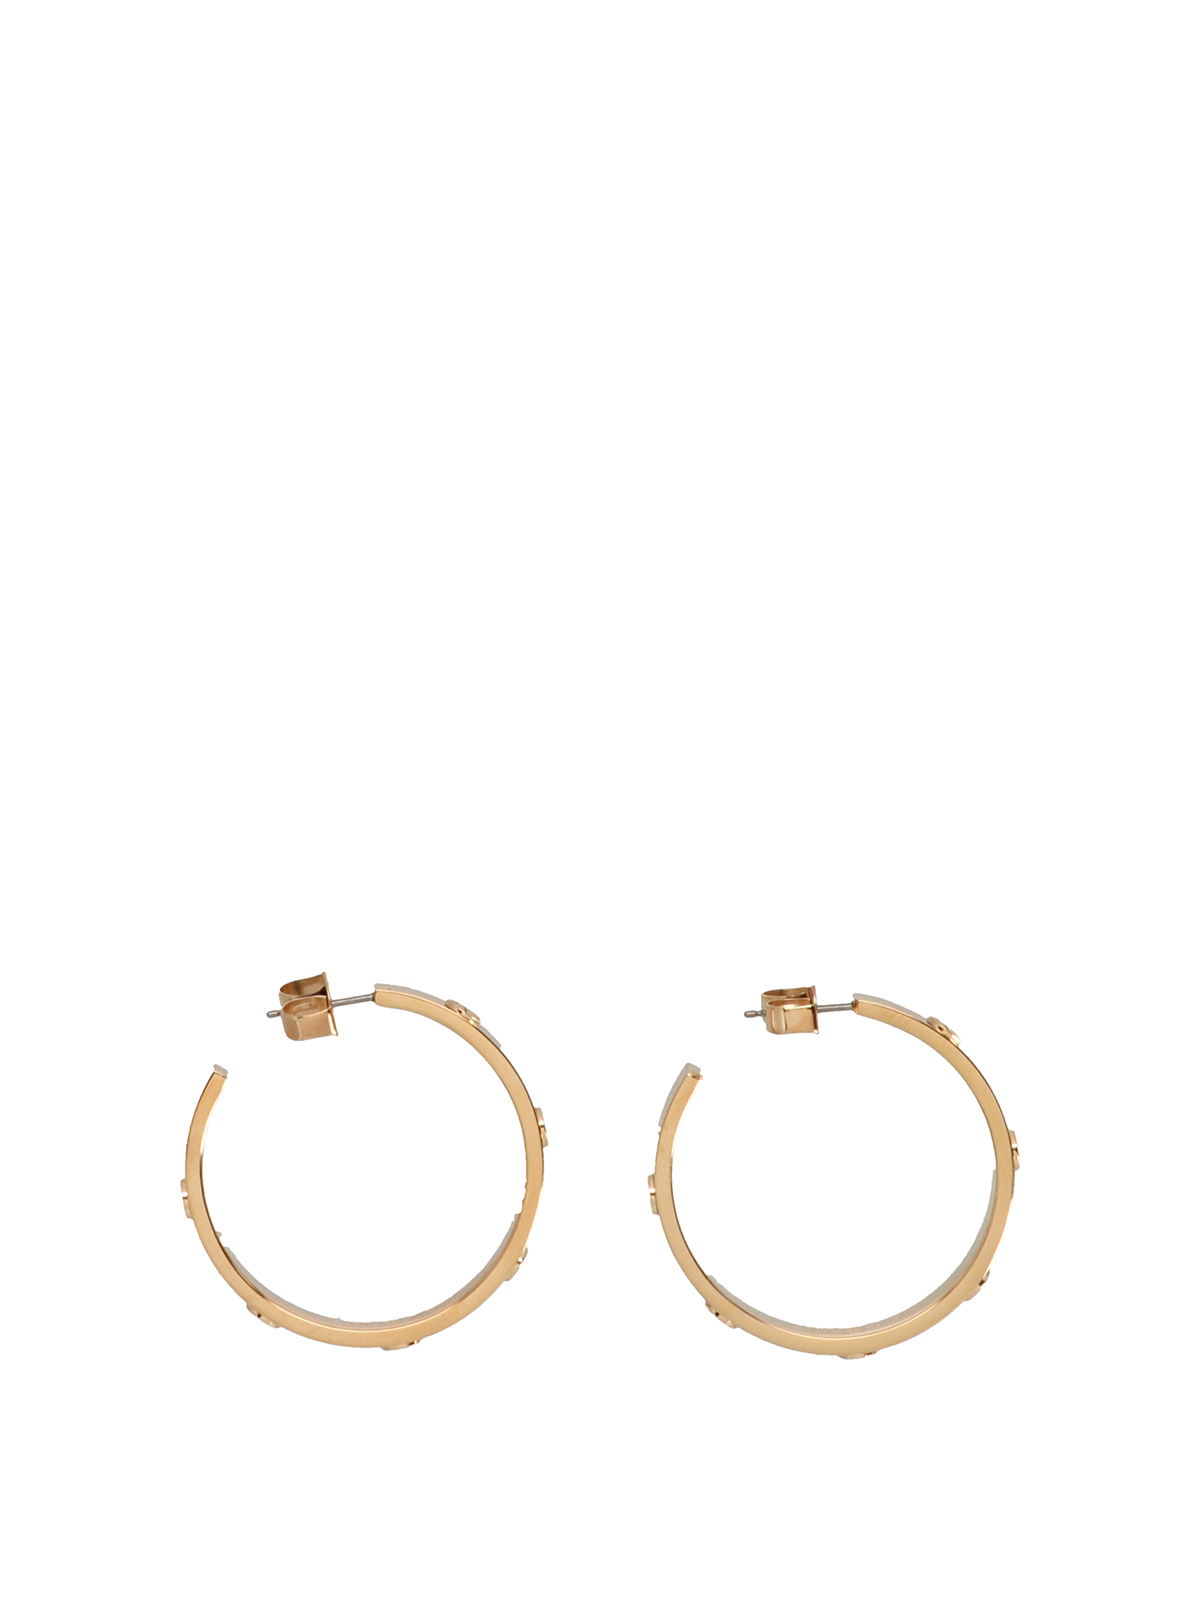 Earrings Tory Burch - Miller gold metal hoop earrings - 147210720